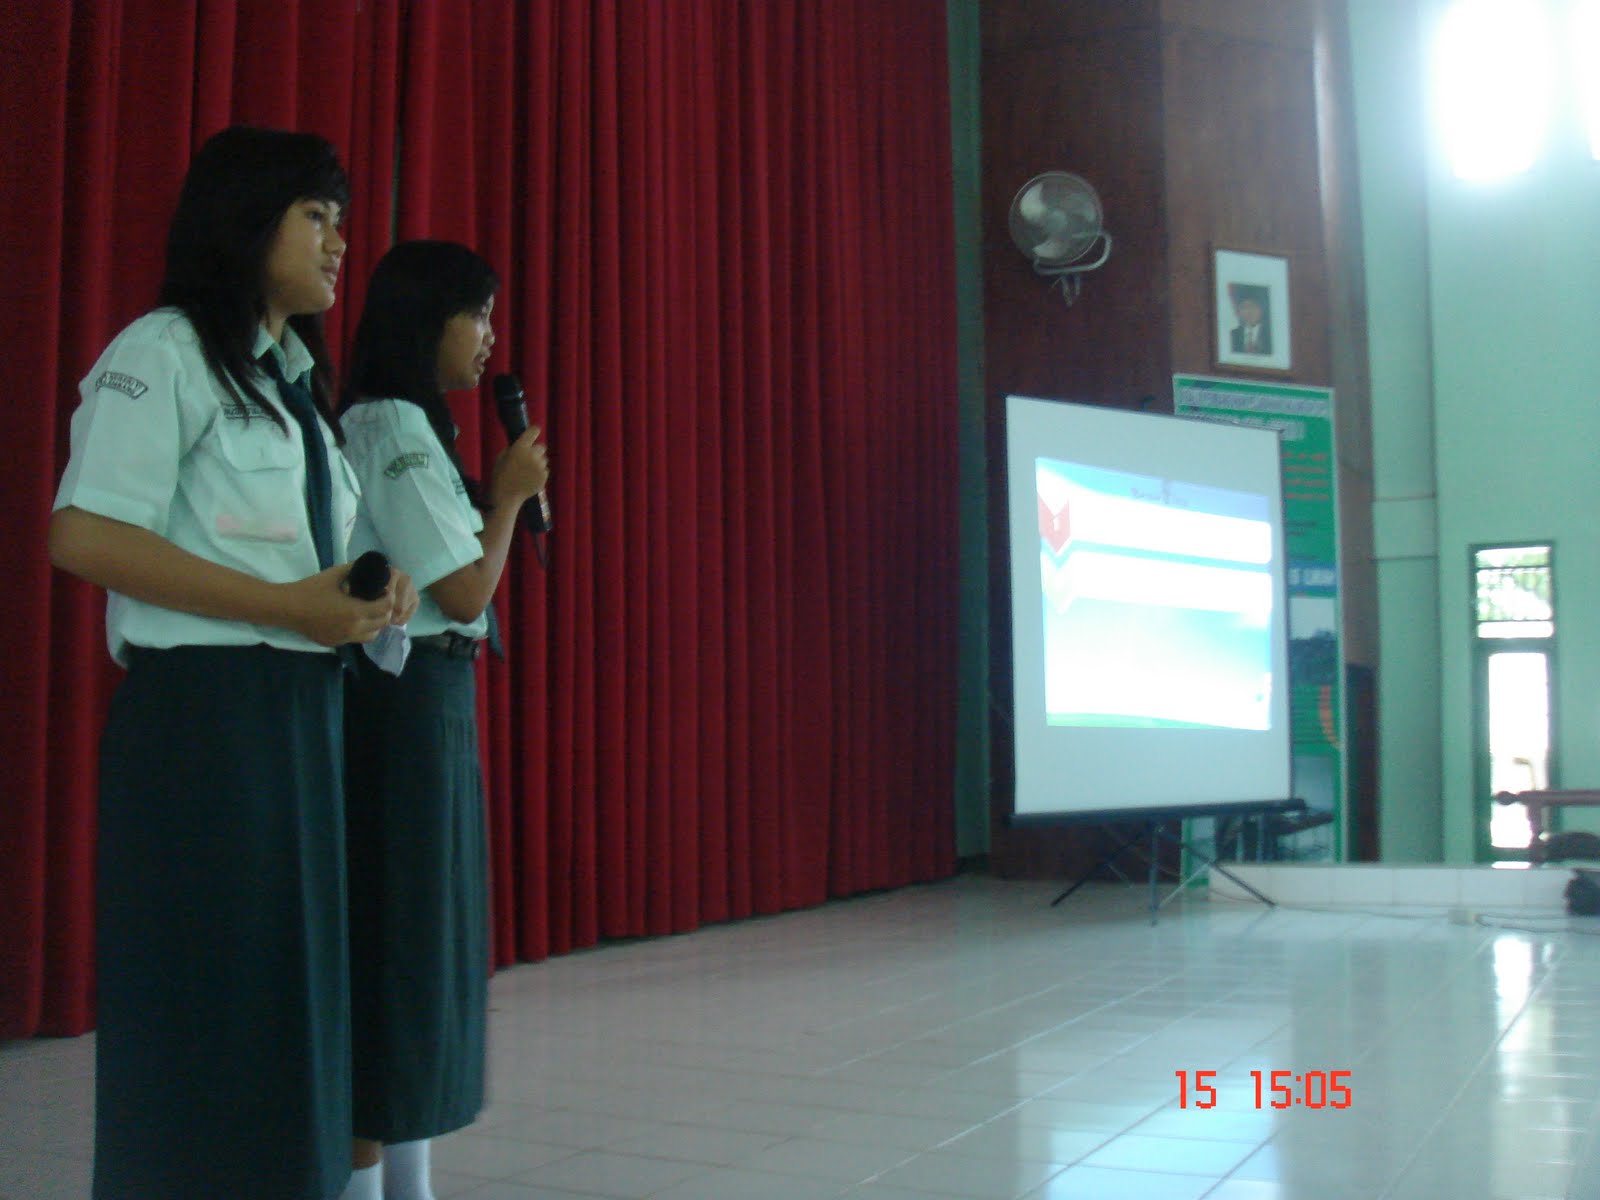 Acara selanjutnya adalah presentasi dari seluruh ekskul yang ada di SMA Plus Negeri 17 Palembang Presentasi dari ekskul Pramuka mengawali kegiatan pada